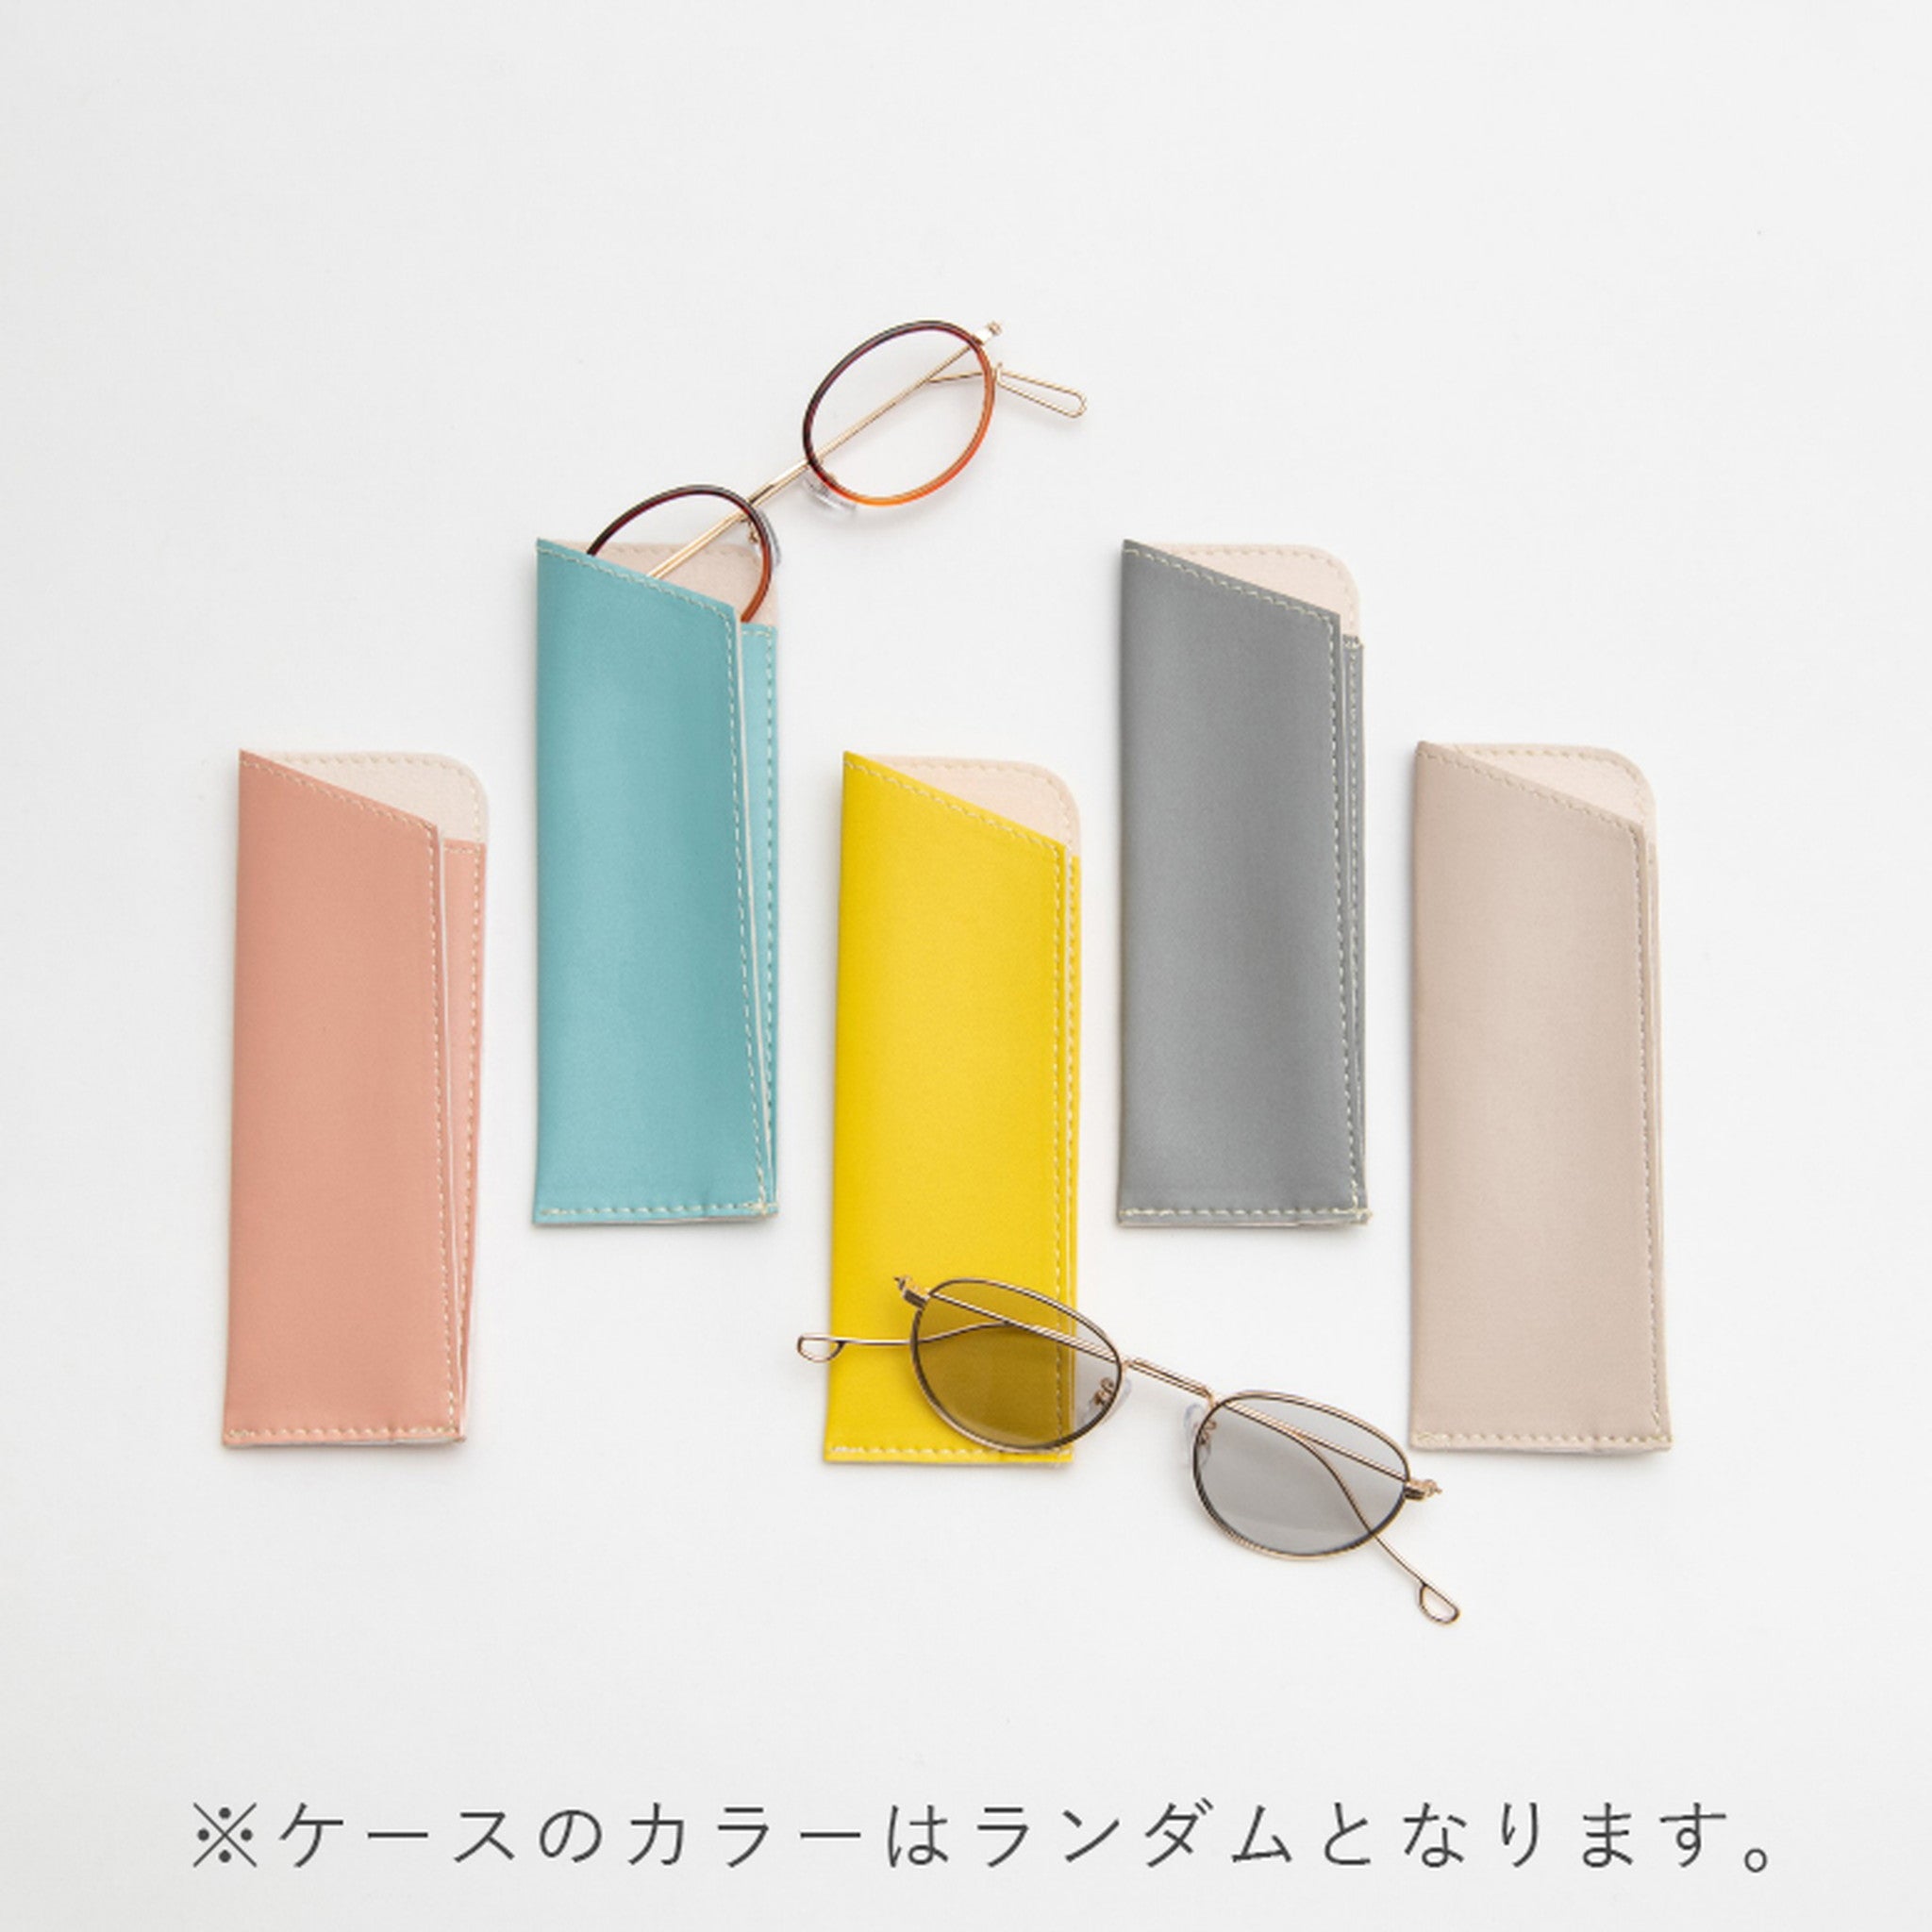 【Ciqi】MIKK サングラス Citrus Lemon Light Gray Lens sunglasses(ミック シトラスレモン ライトグレーレンズ)